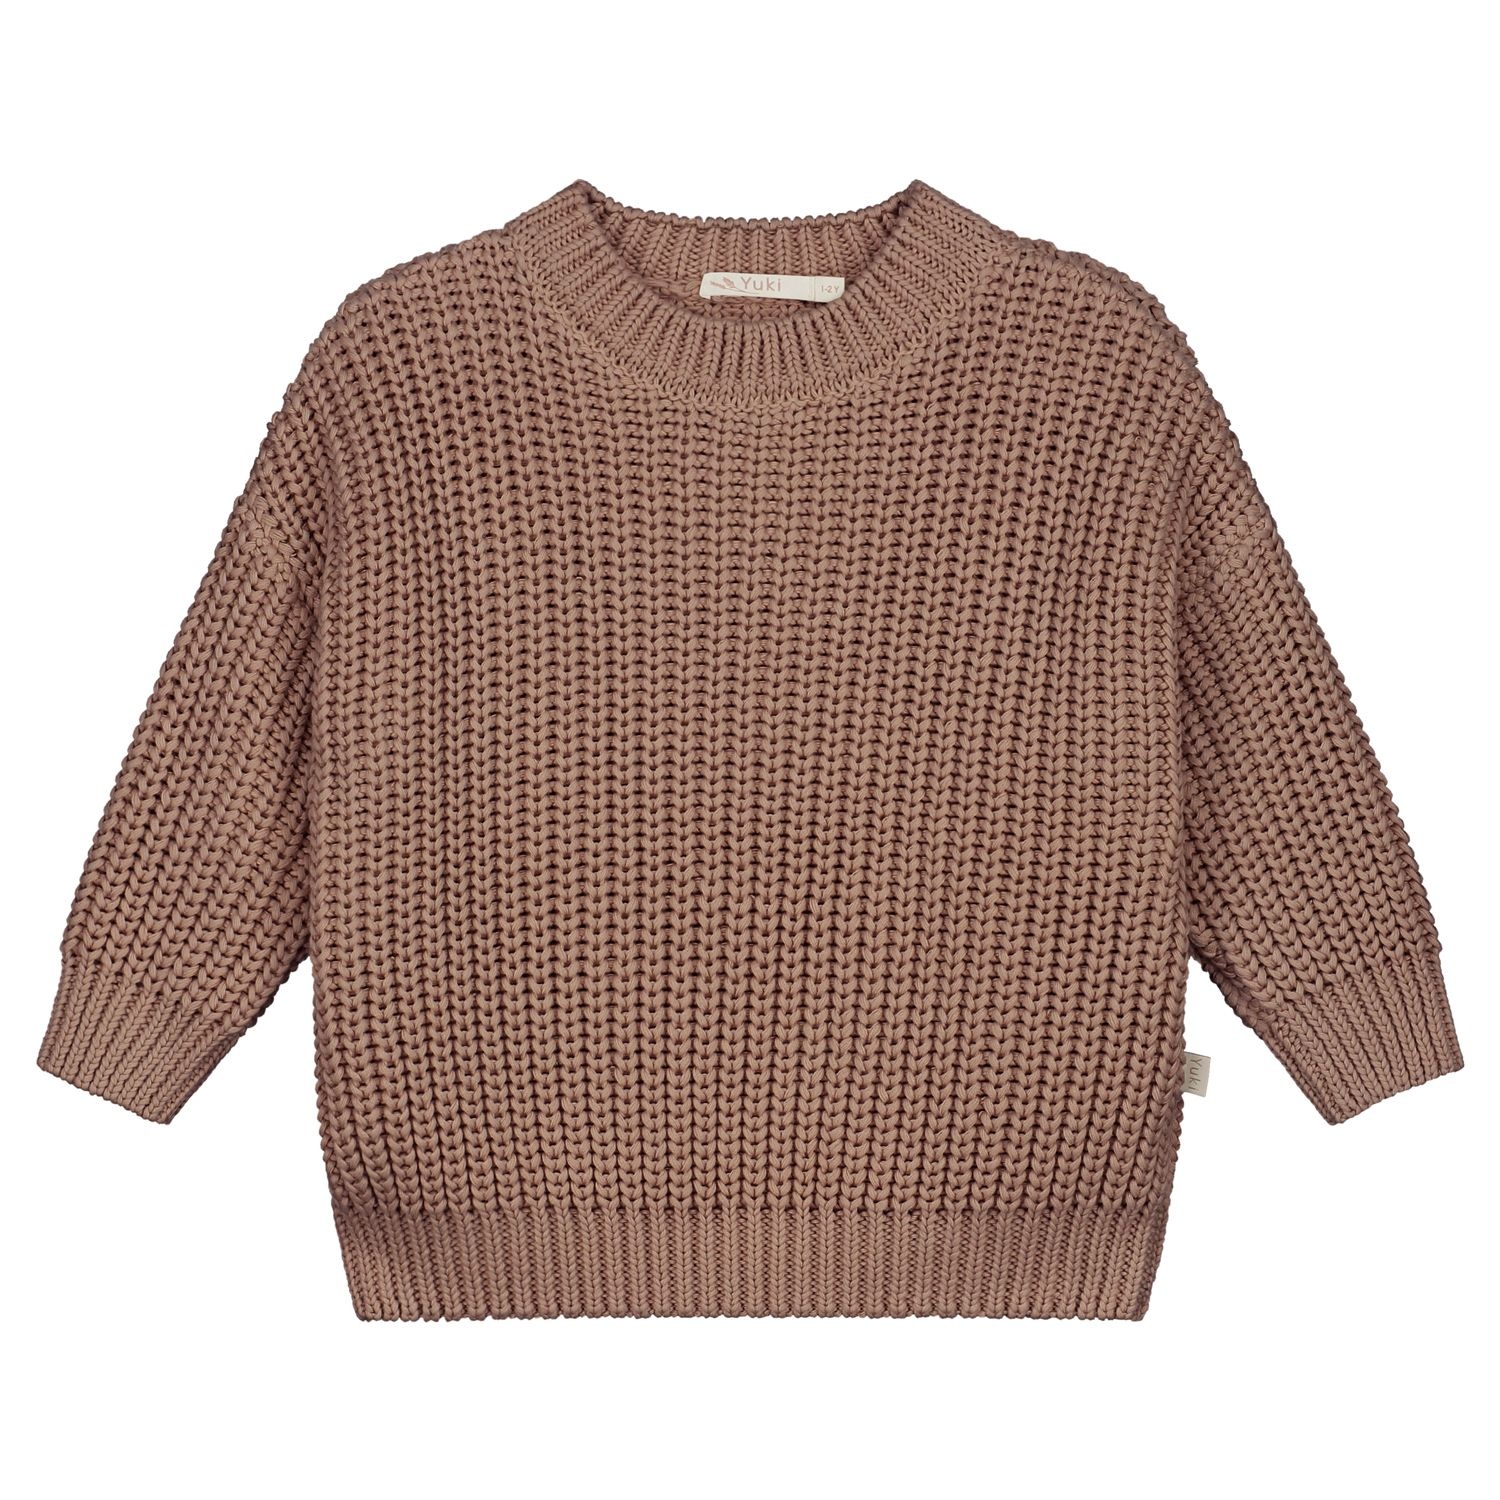 chunky knitted sweater // mist - Petozzi